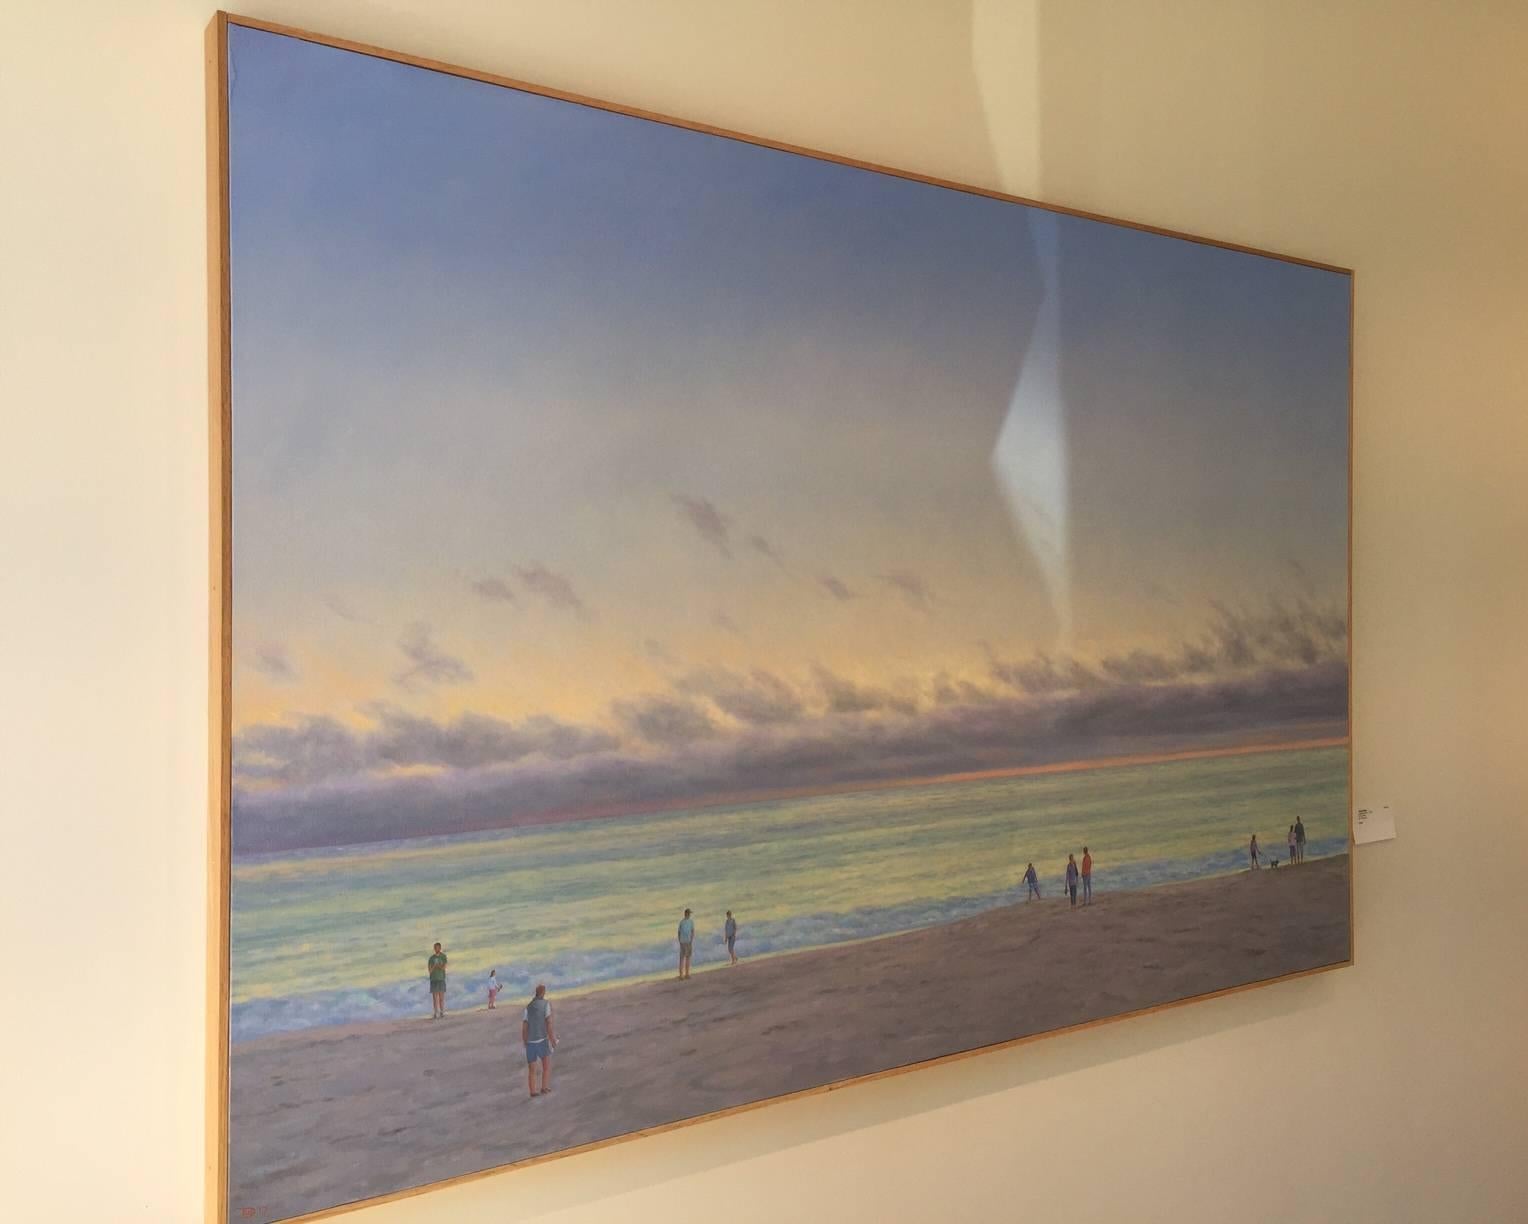 Evening Beach III / huile sur toile - réalisme figuratif familial de la plage et de l'océan - Painting de Willard Dixon